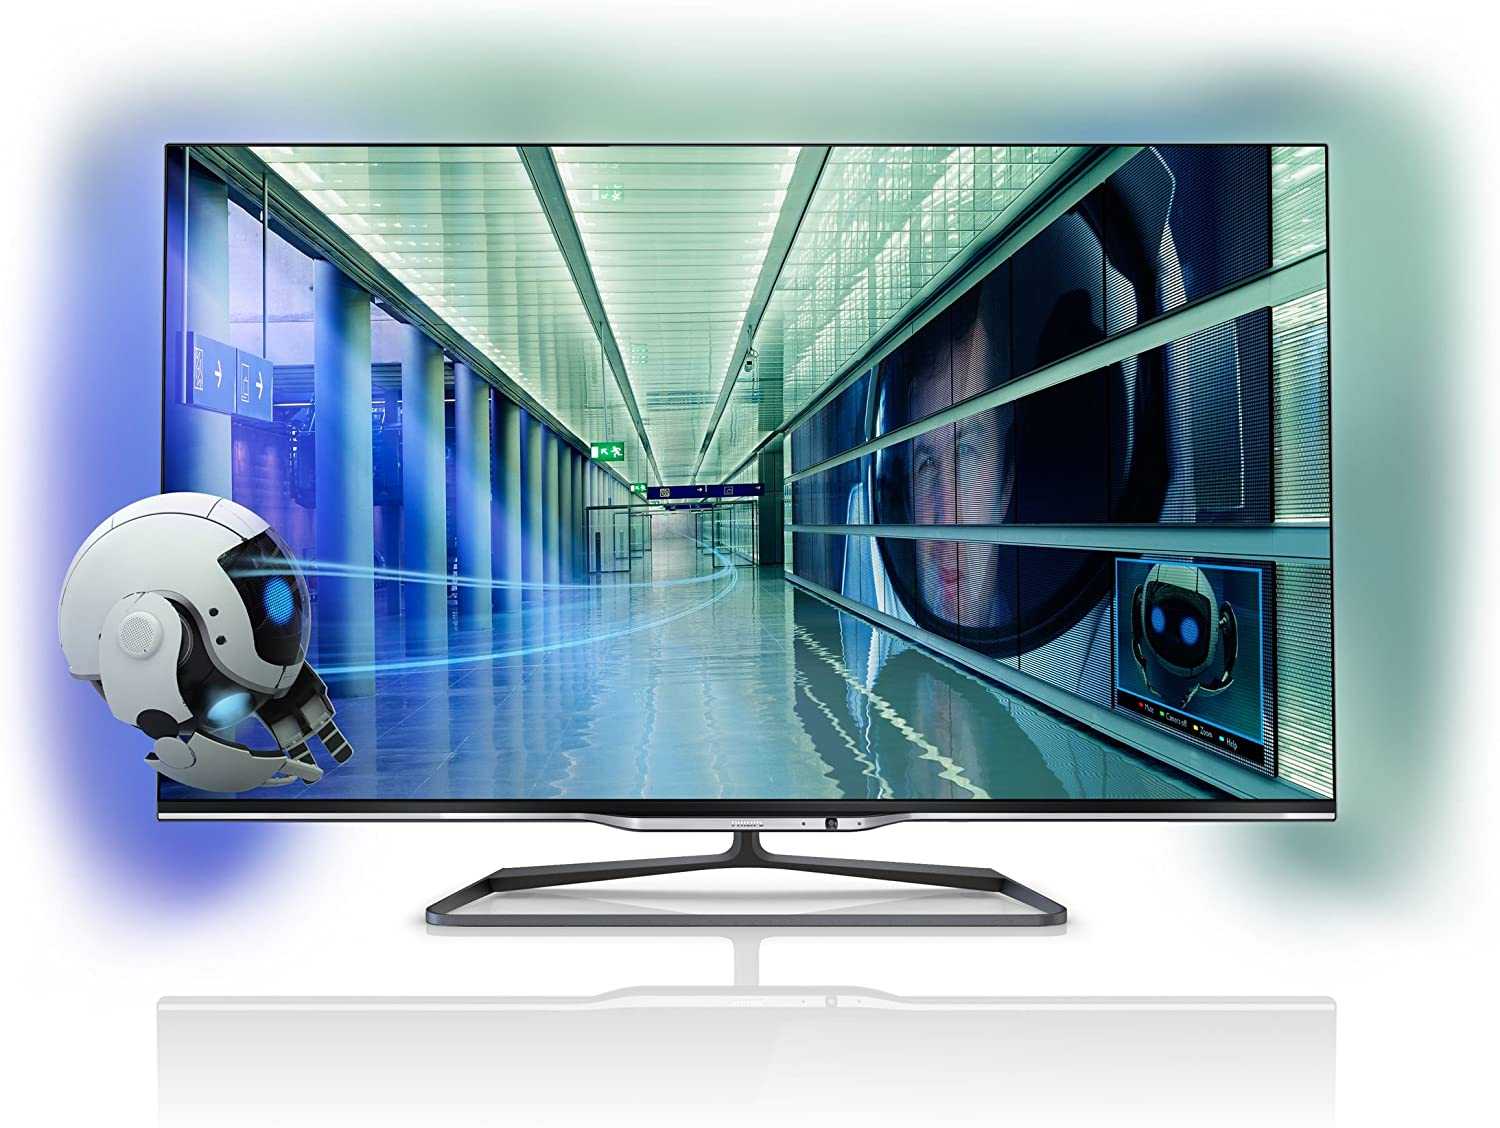 Телевизор Philips 55PFL7108K - подробные характеристики обзоры видео фото Цены в интернет-магазинах где можно купить телевизор Philips 55PFL7108K